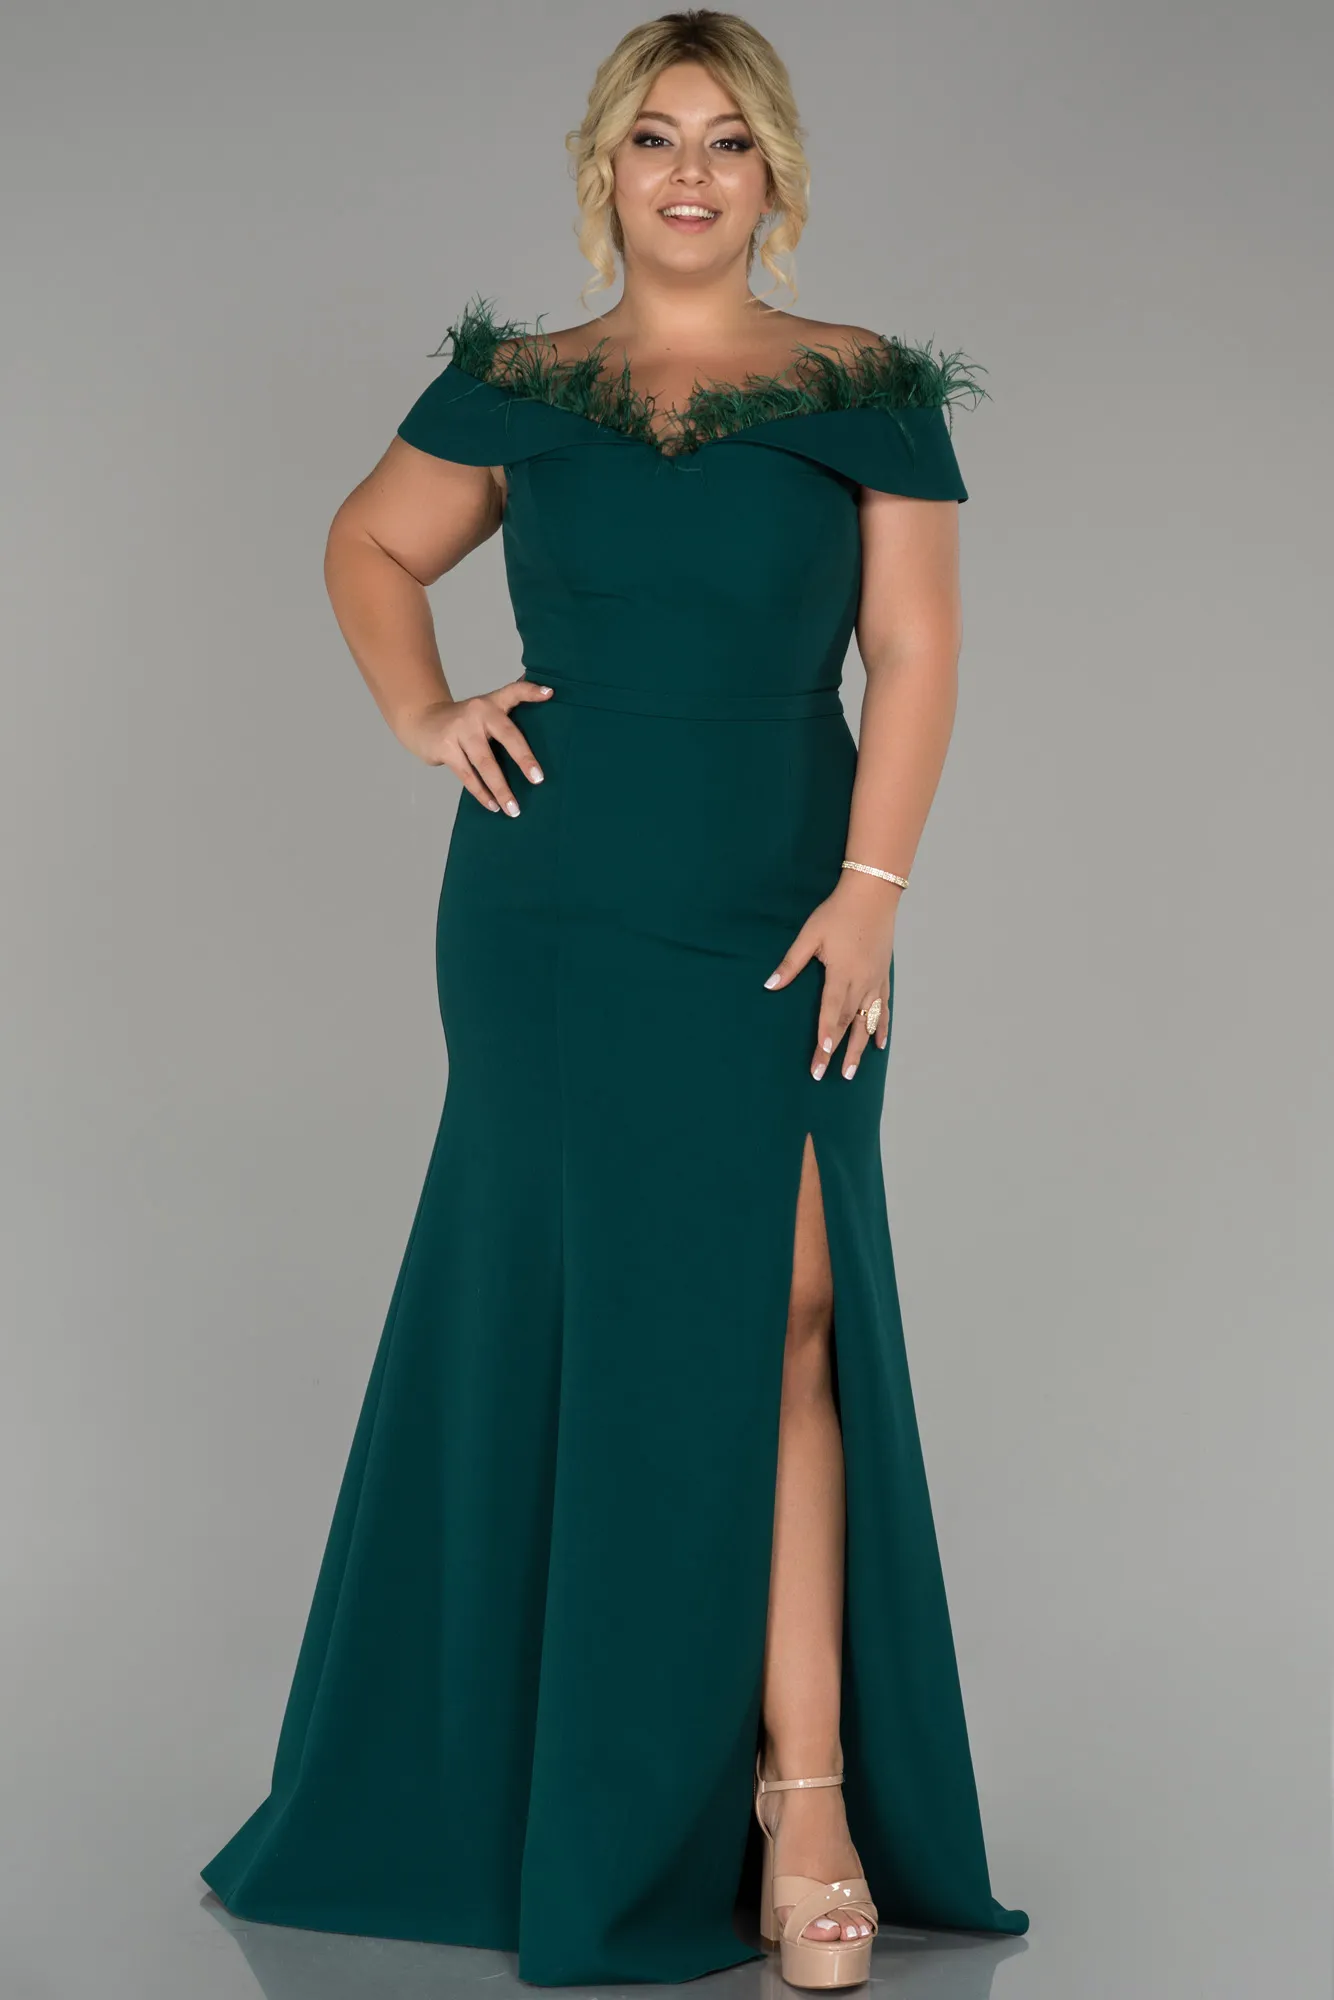 Emerald Green-Long Oversized Evening Dress ABU1459